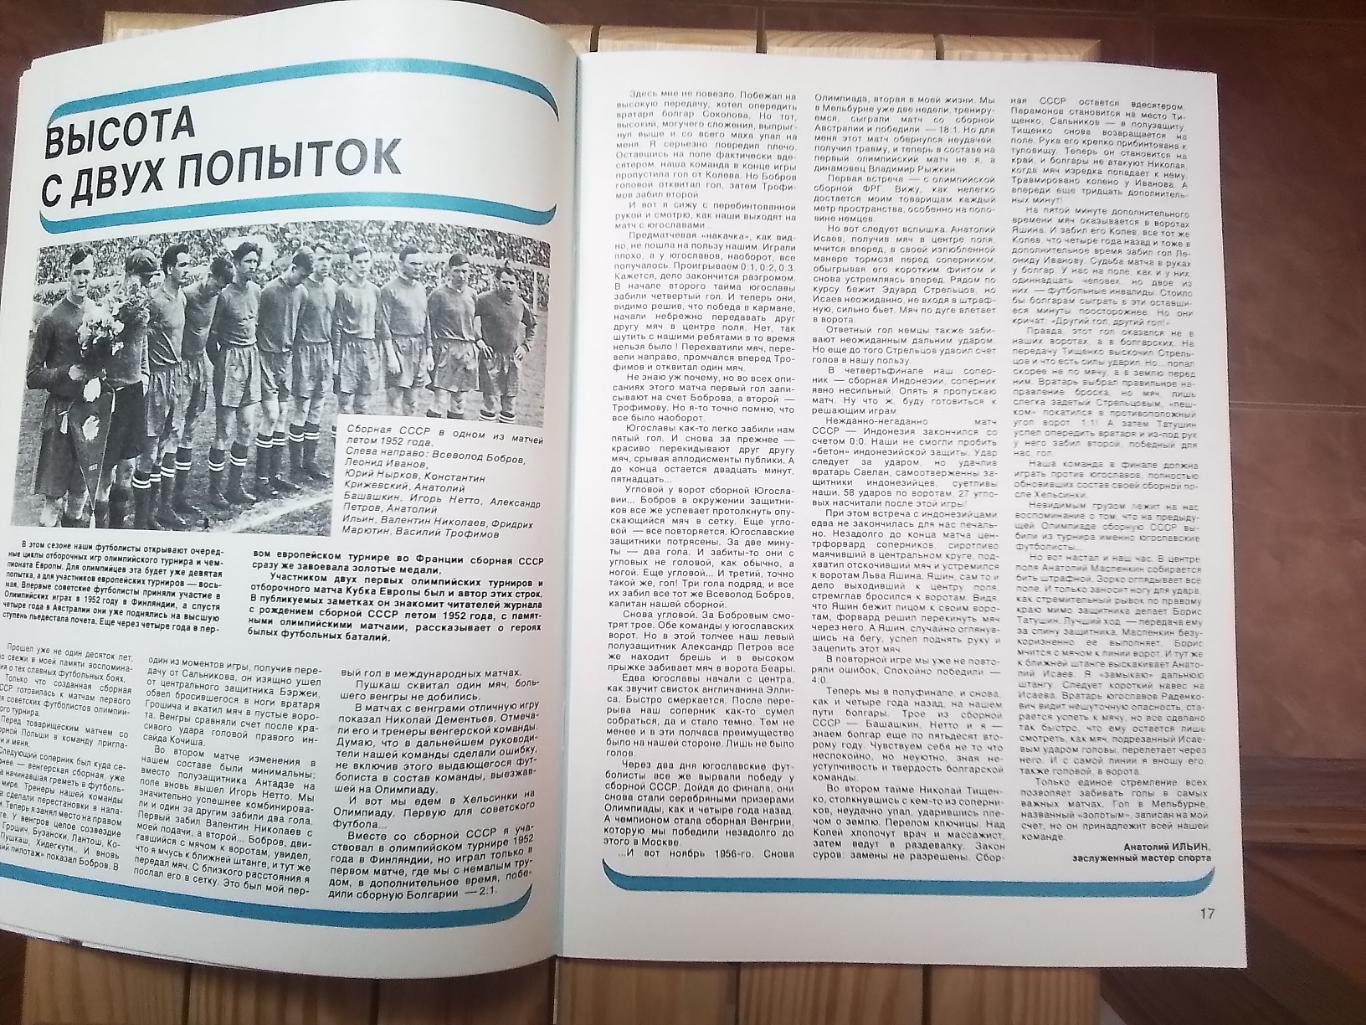 Журнал Спортивные игры N 10 1986 Беланов Динамо Киев 5